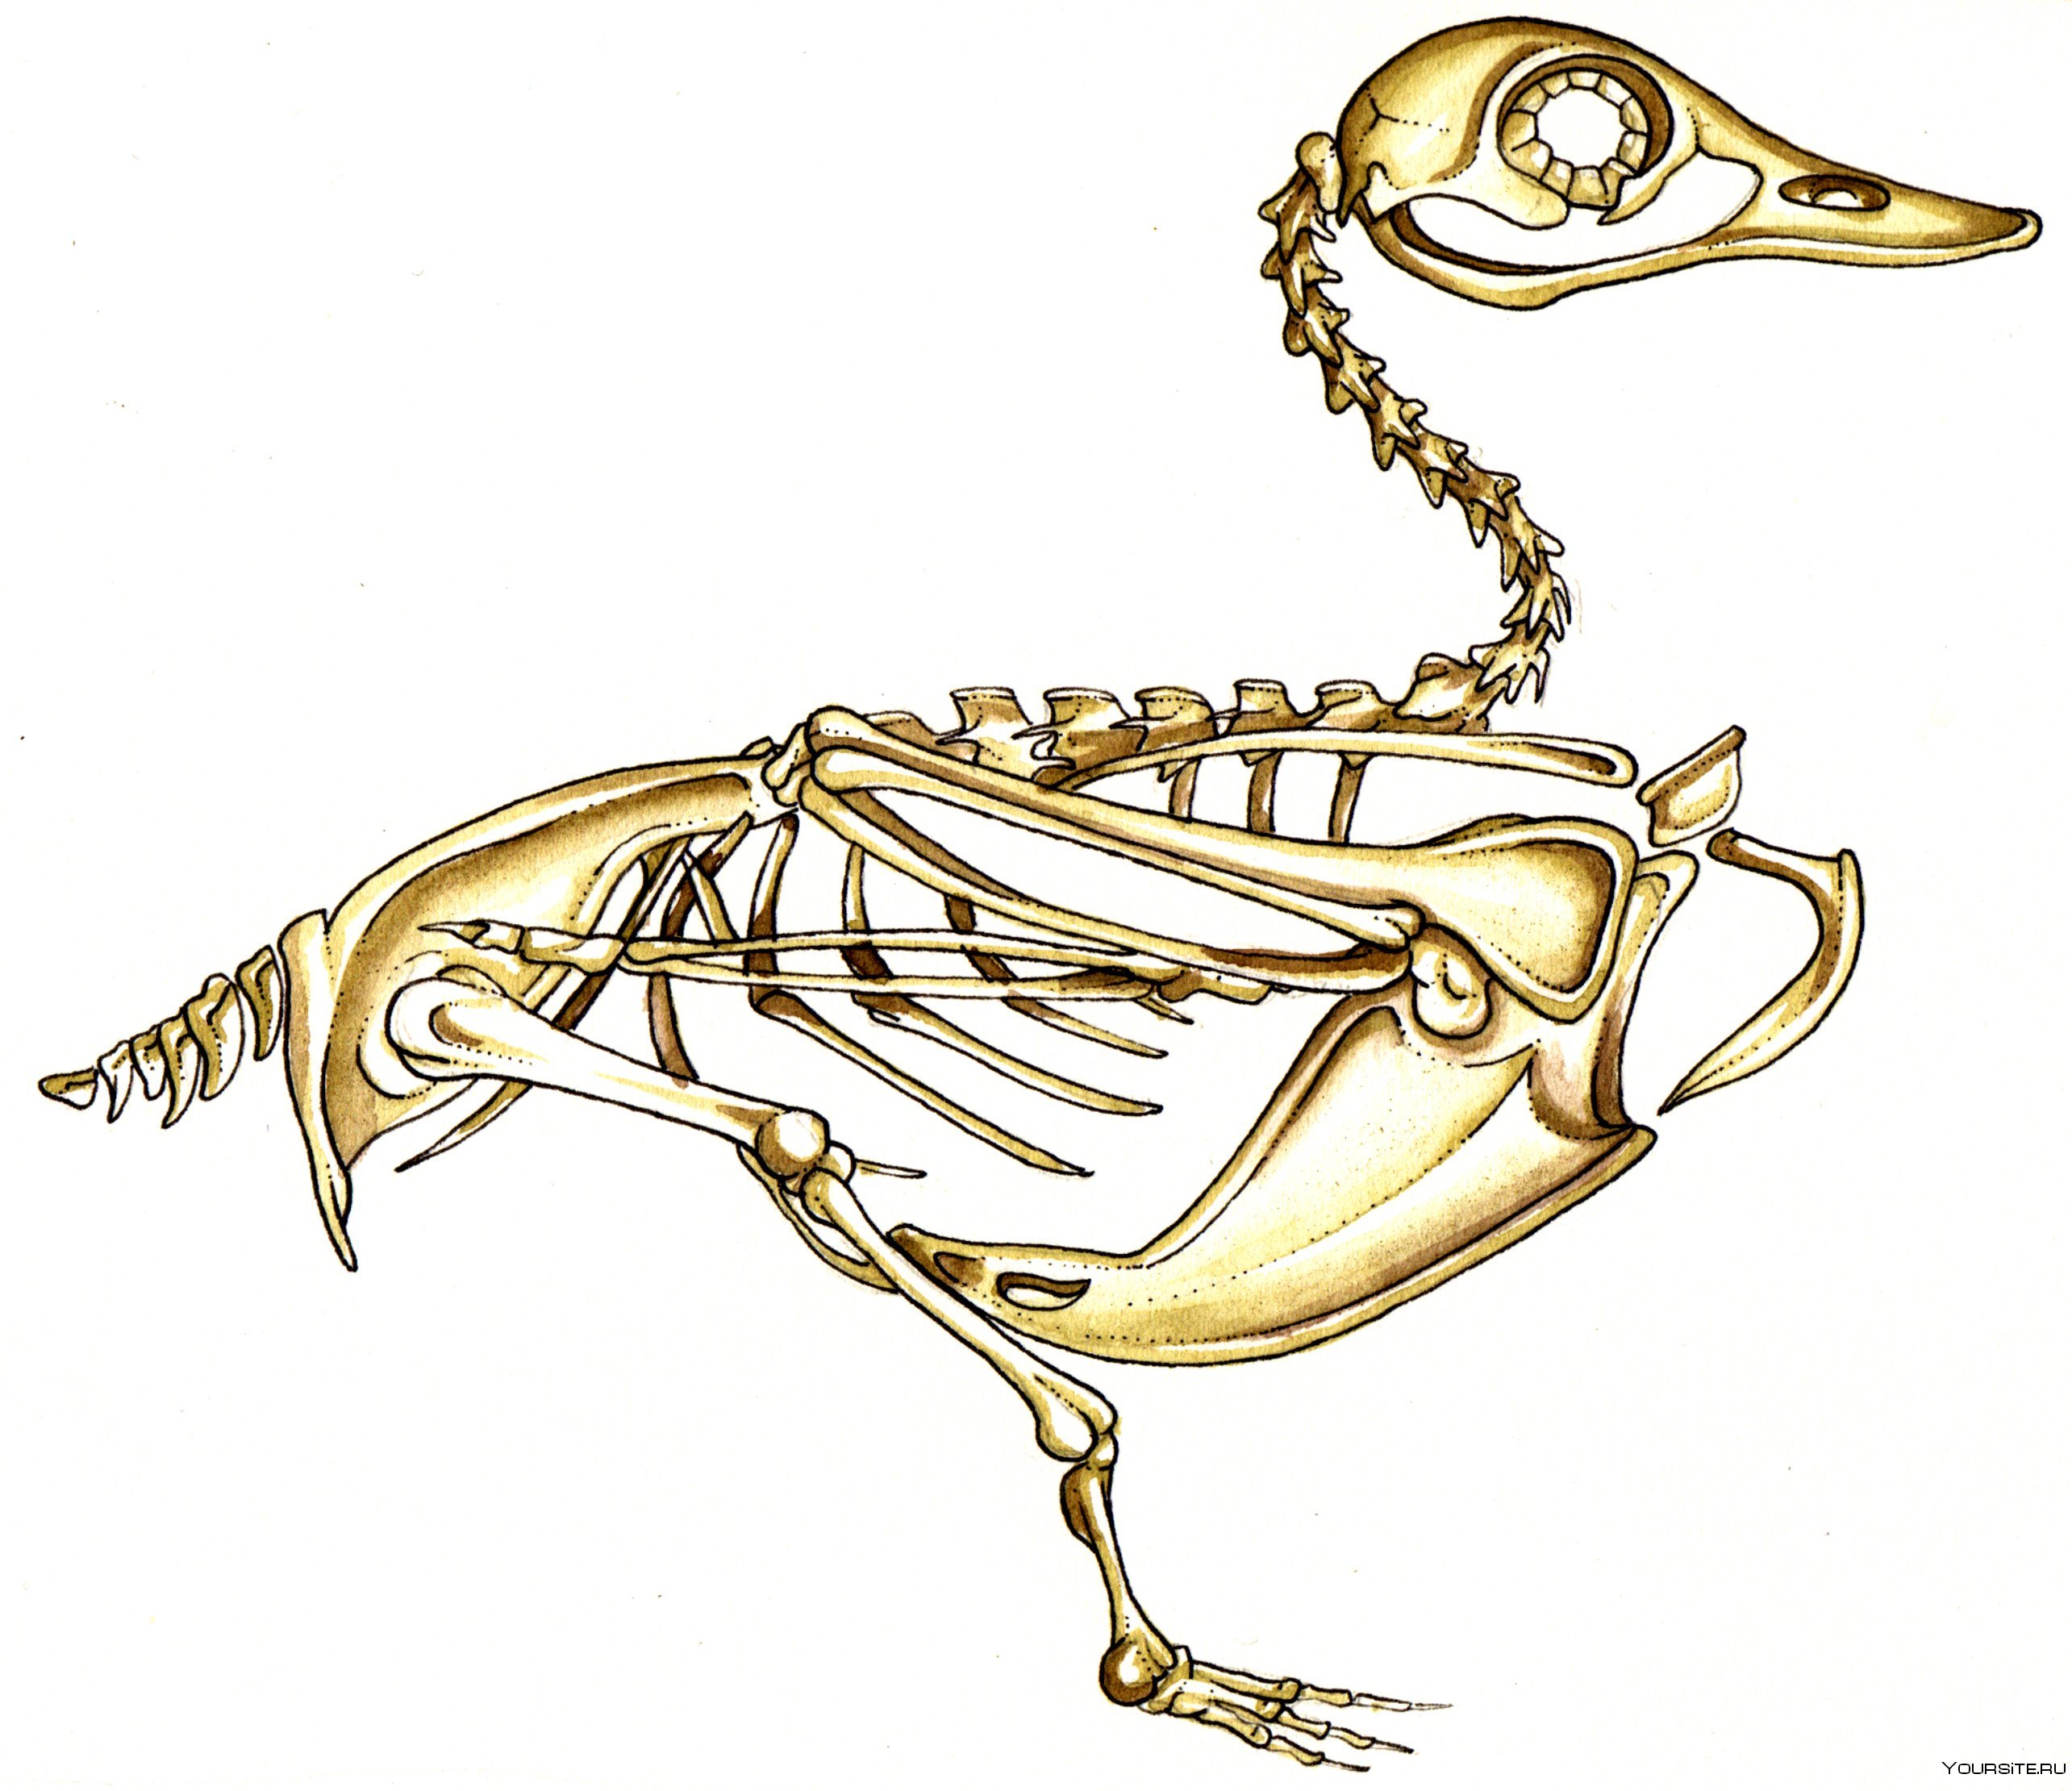 Кости утки. Скелет кряквы утки. Строение скелета утки кряквы. Скелет птицы анатомия. Скелет утки.